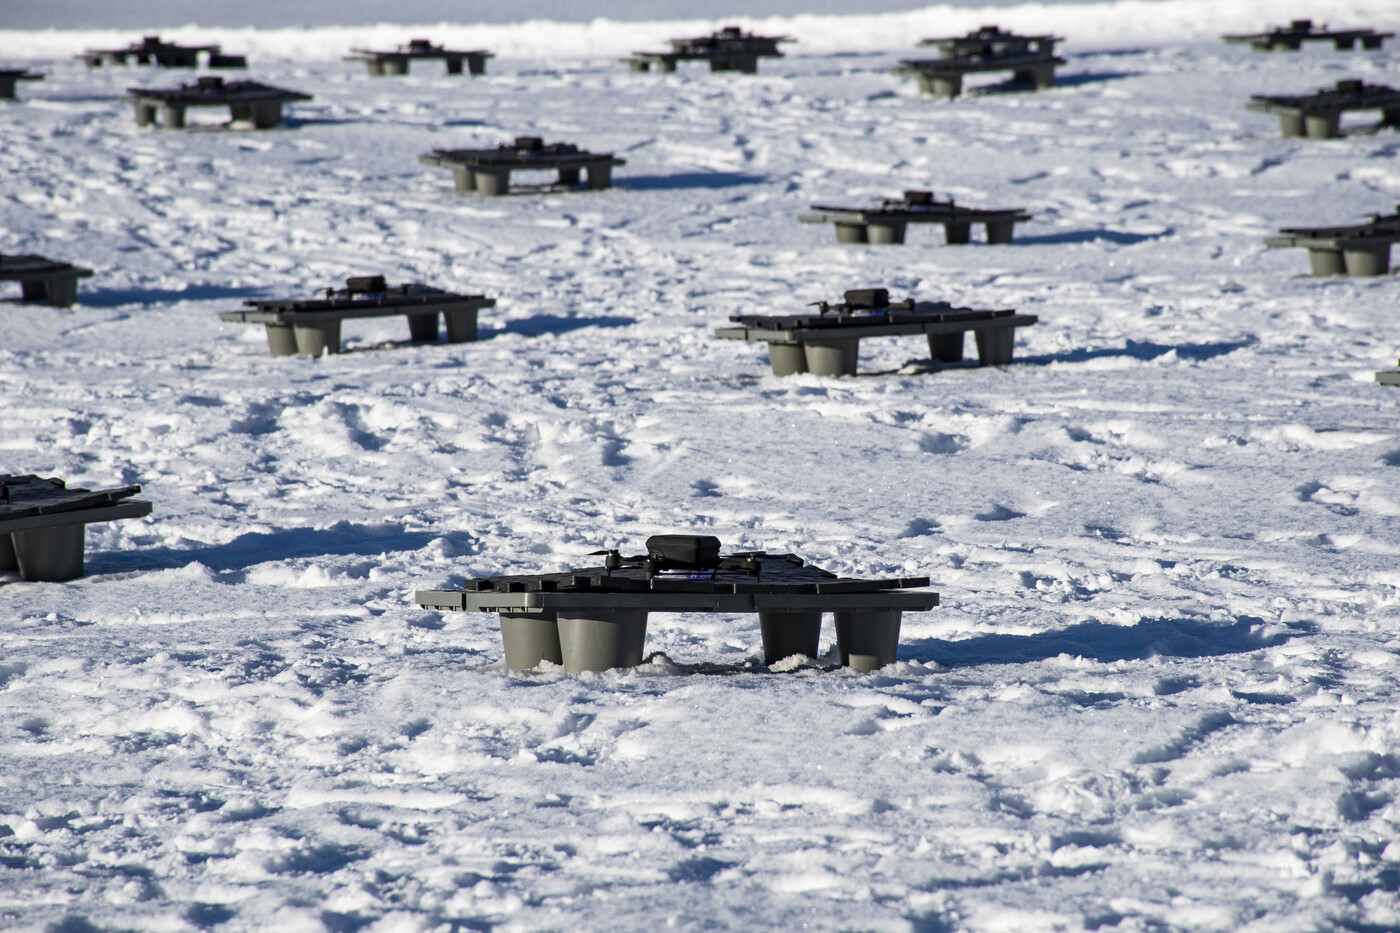 Platz am Boden: Die 50 Drohnen starten von kleinen Plattformen. Bild Laura Kessler